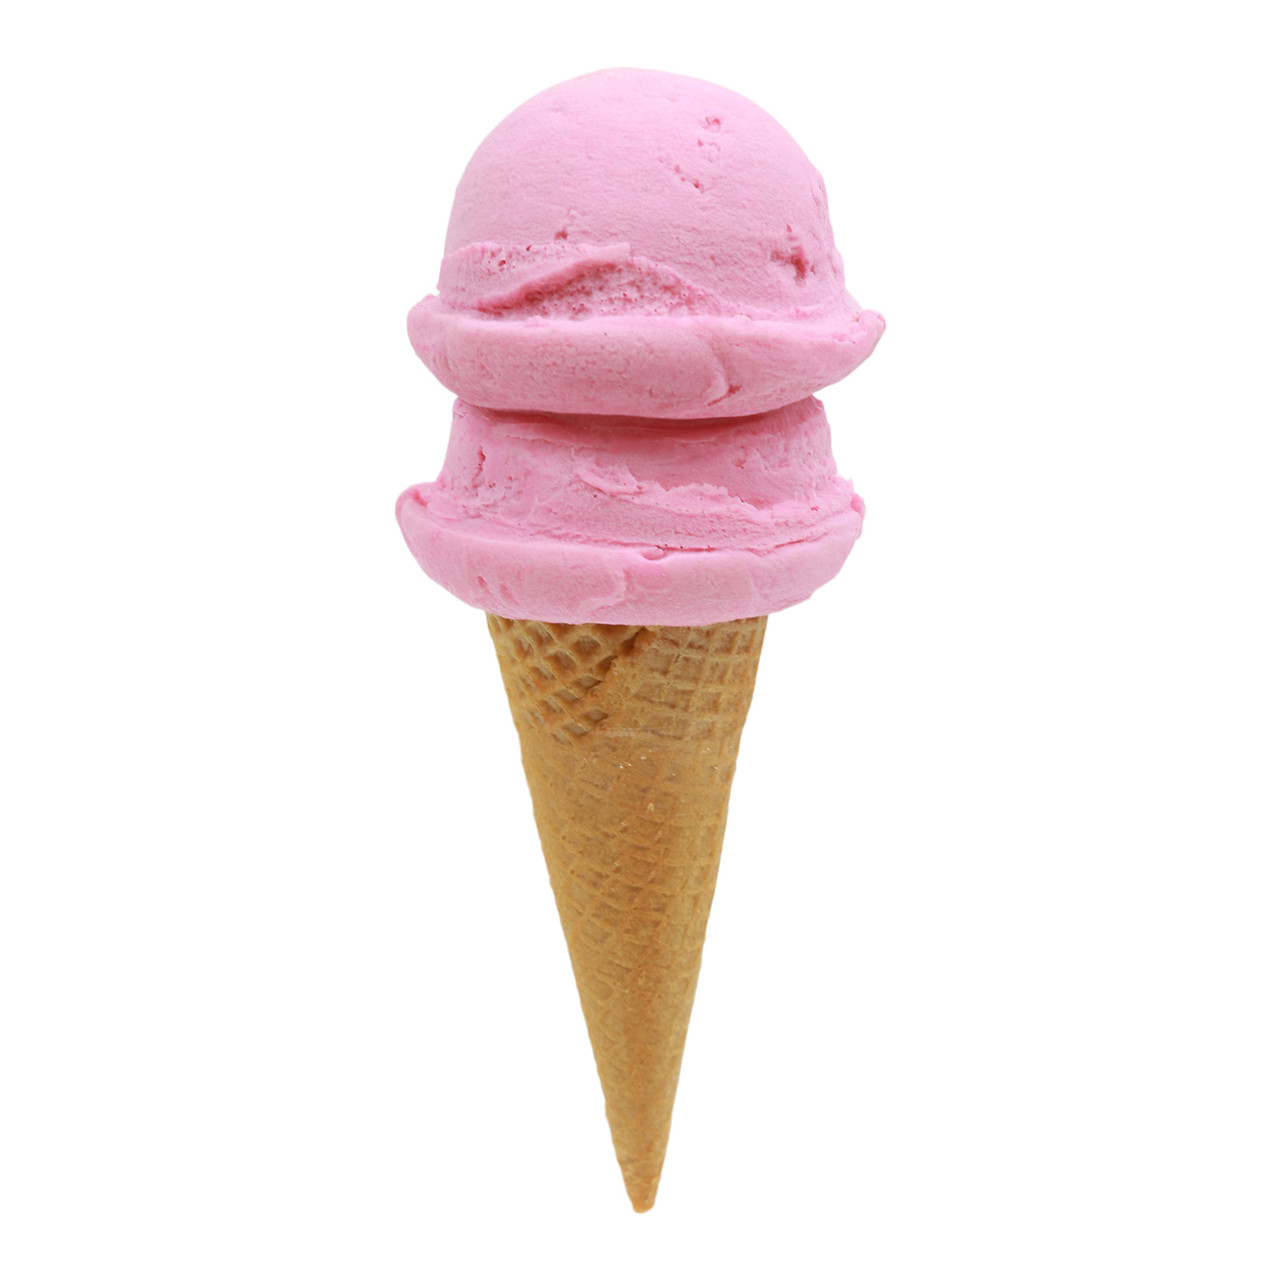 strawberry ice cream scoops